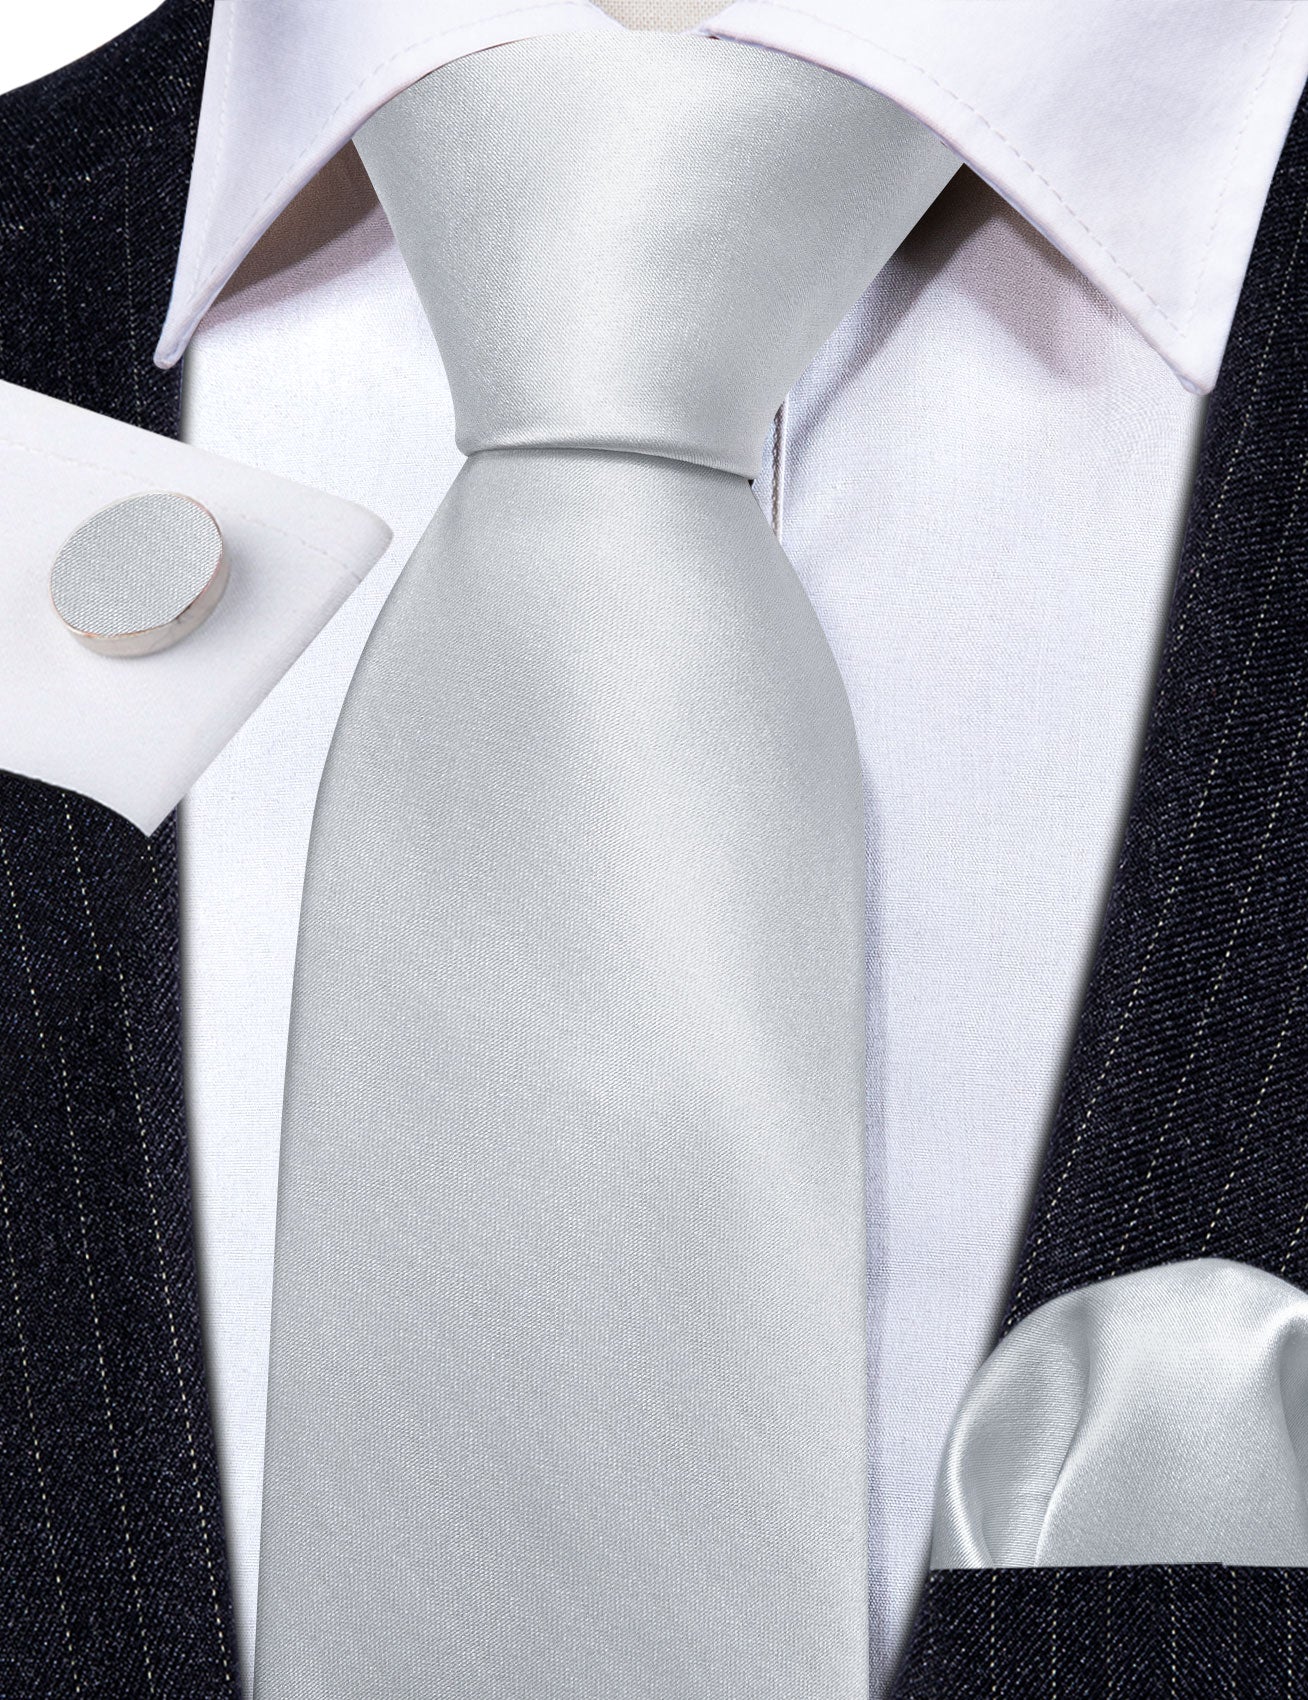 Silver White Solid Silk Tie Handkerchief Cufflinks Set